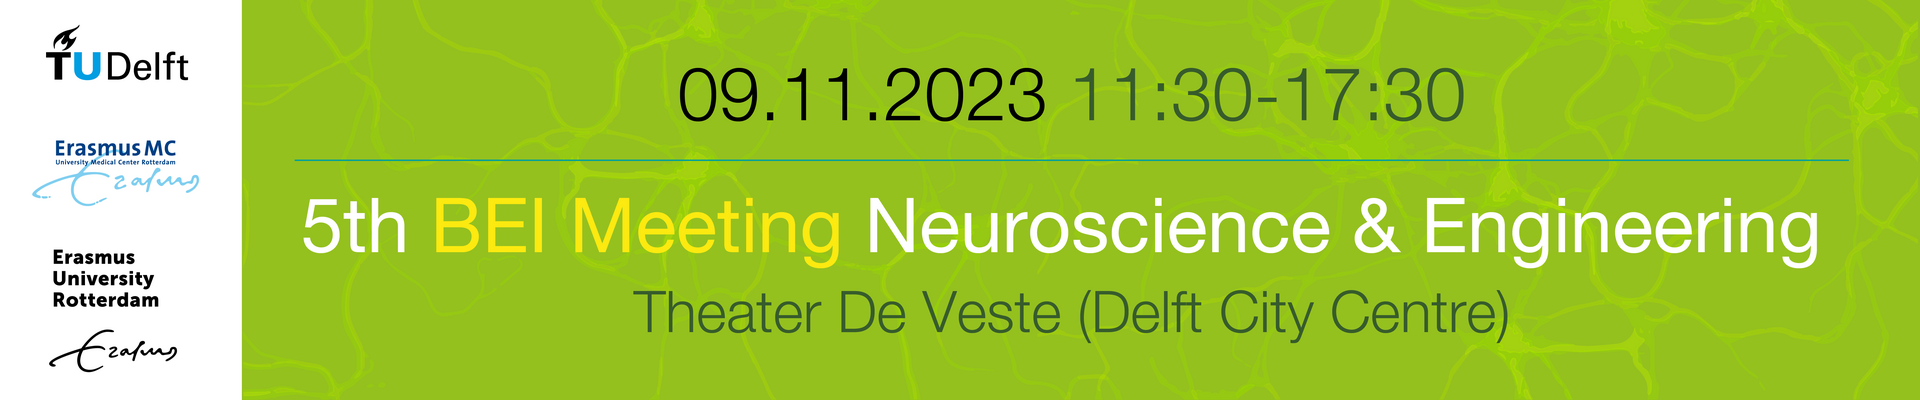 5th BEI Meeting Neuroscience & Engineering